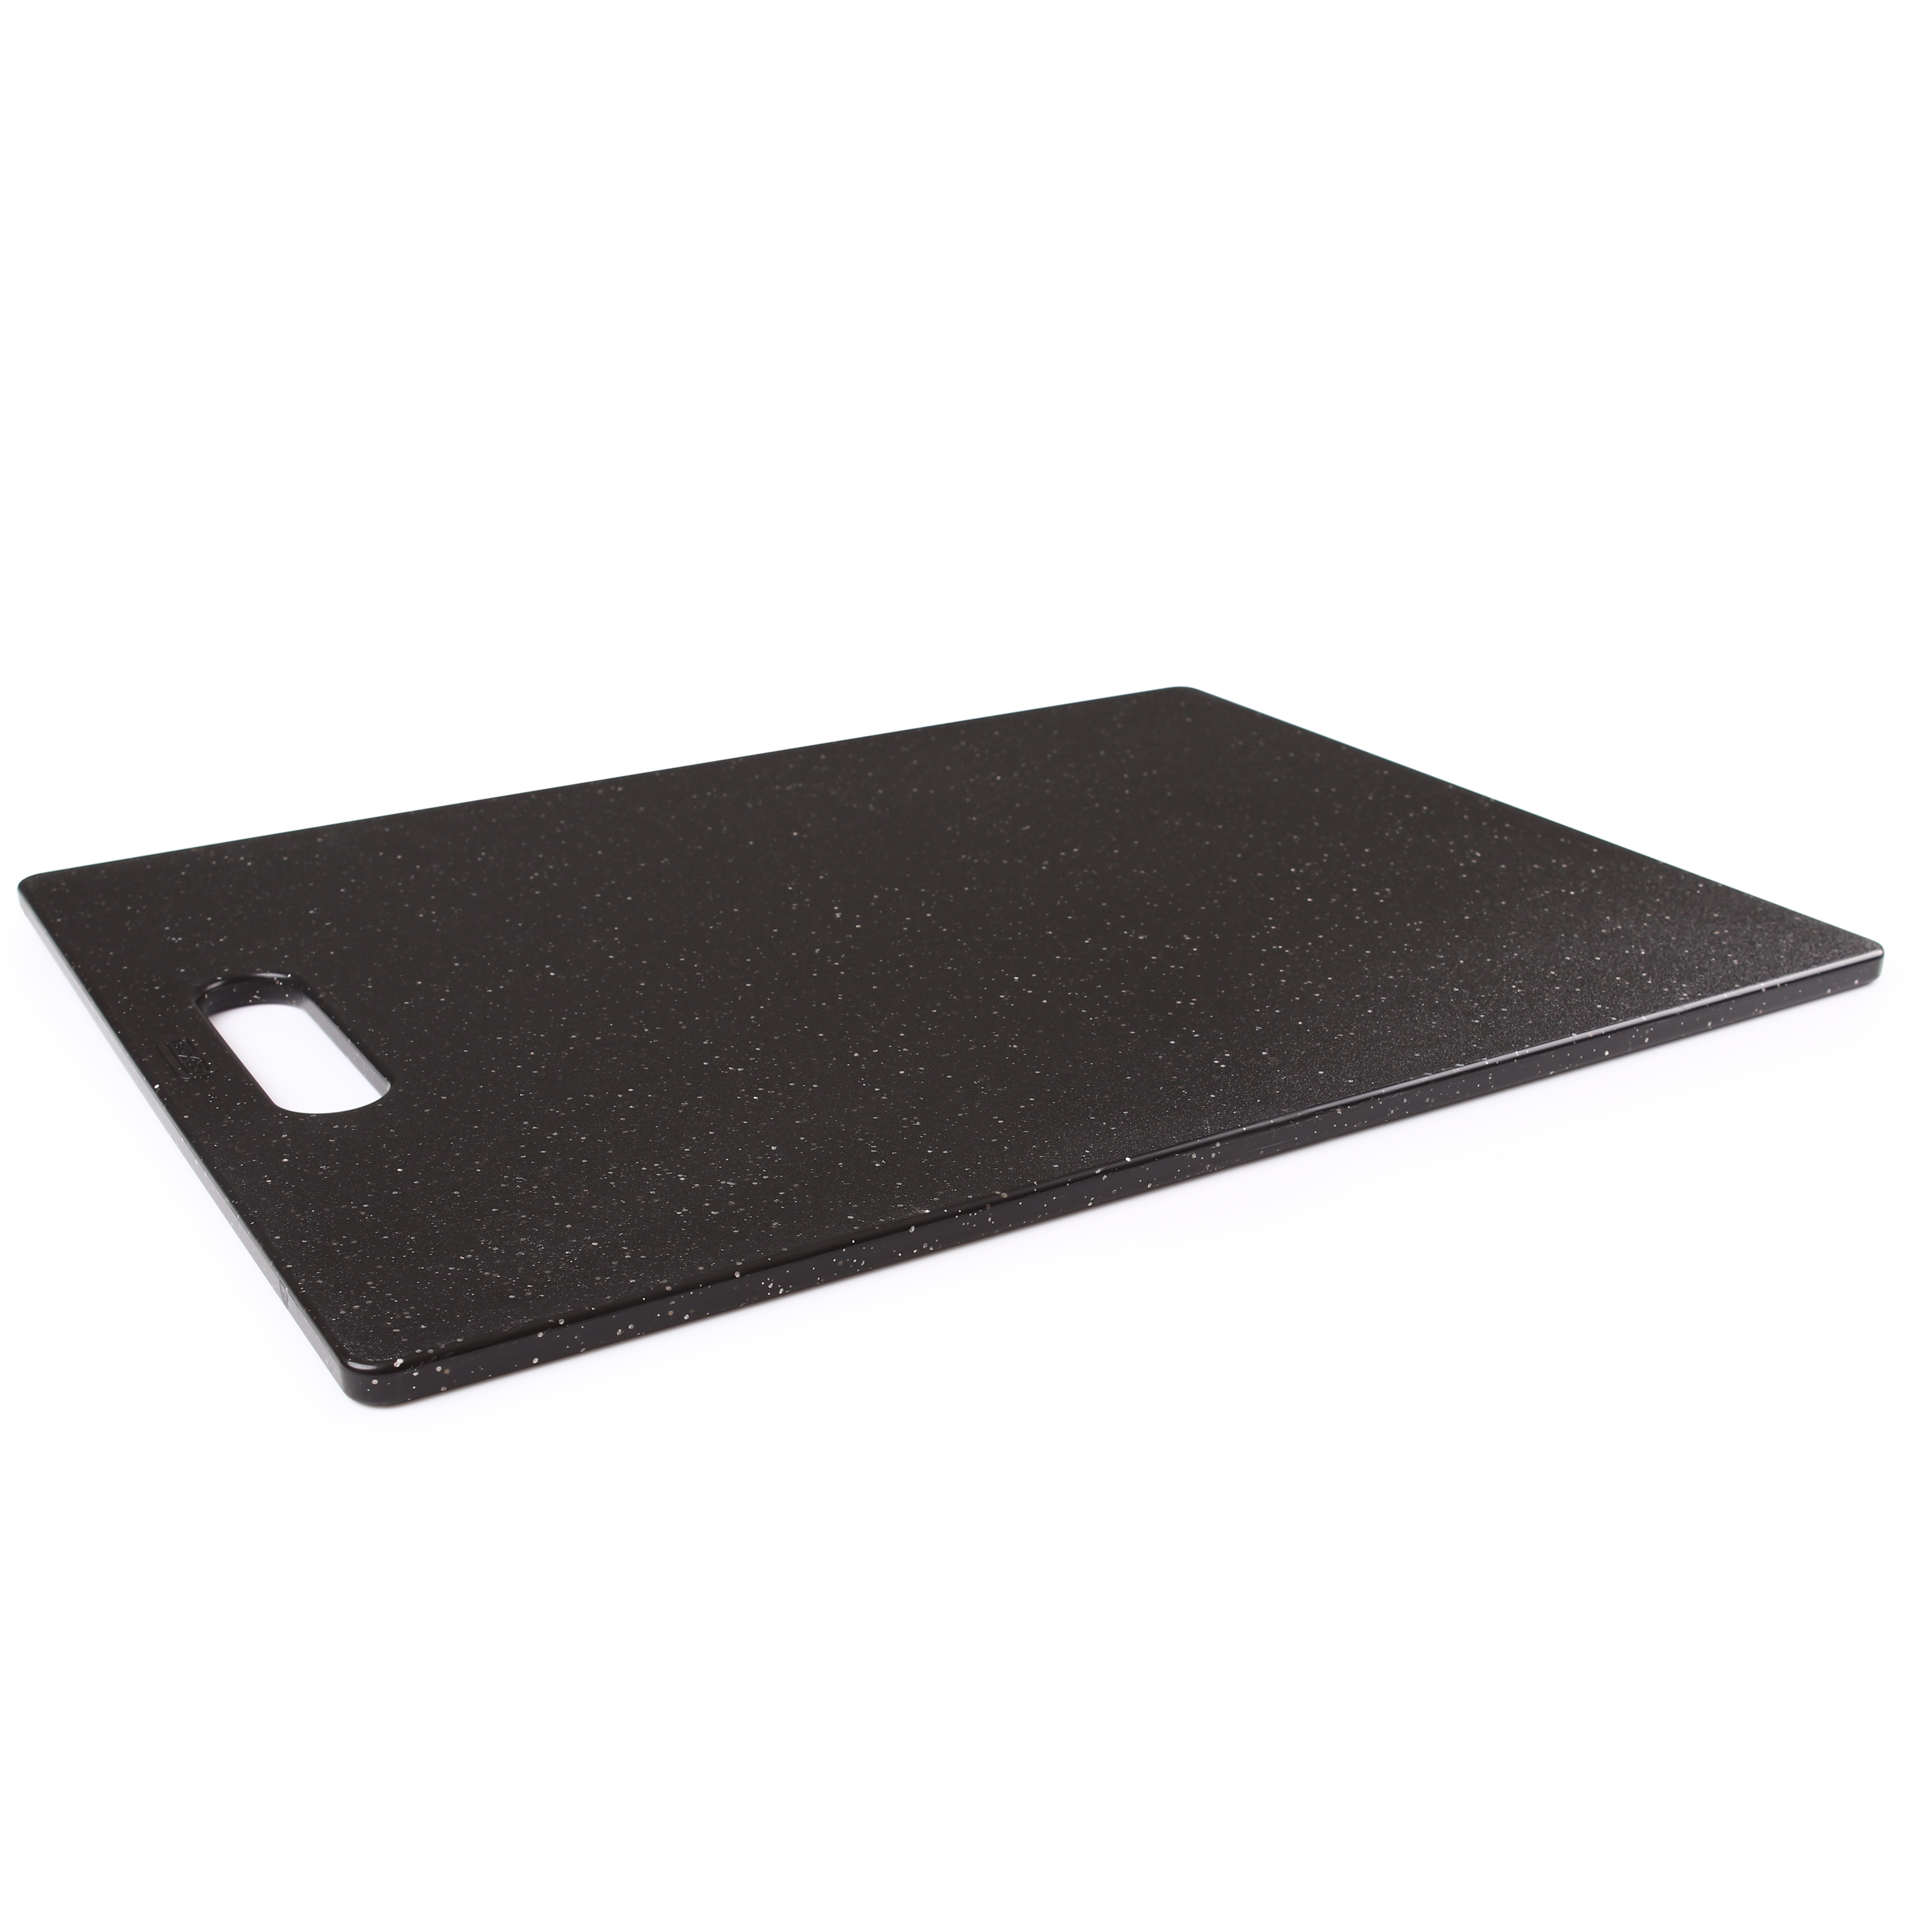 Midnight Granite Cutting Board Black Cutting Board 12L x 8W x